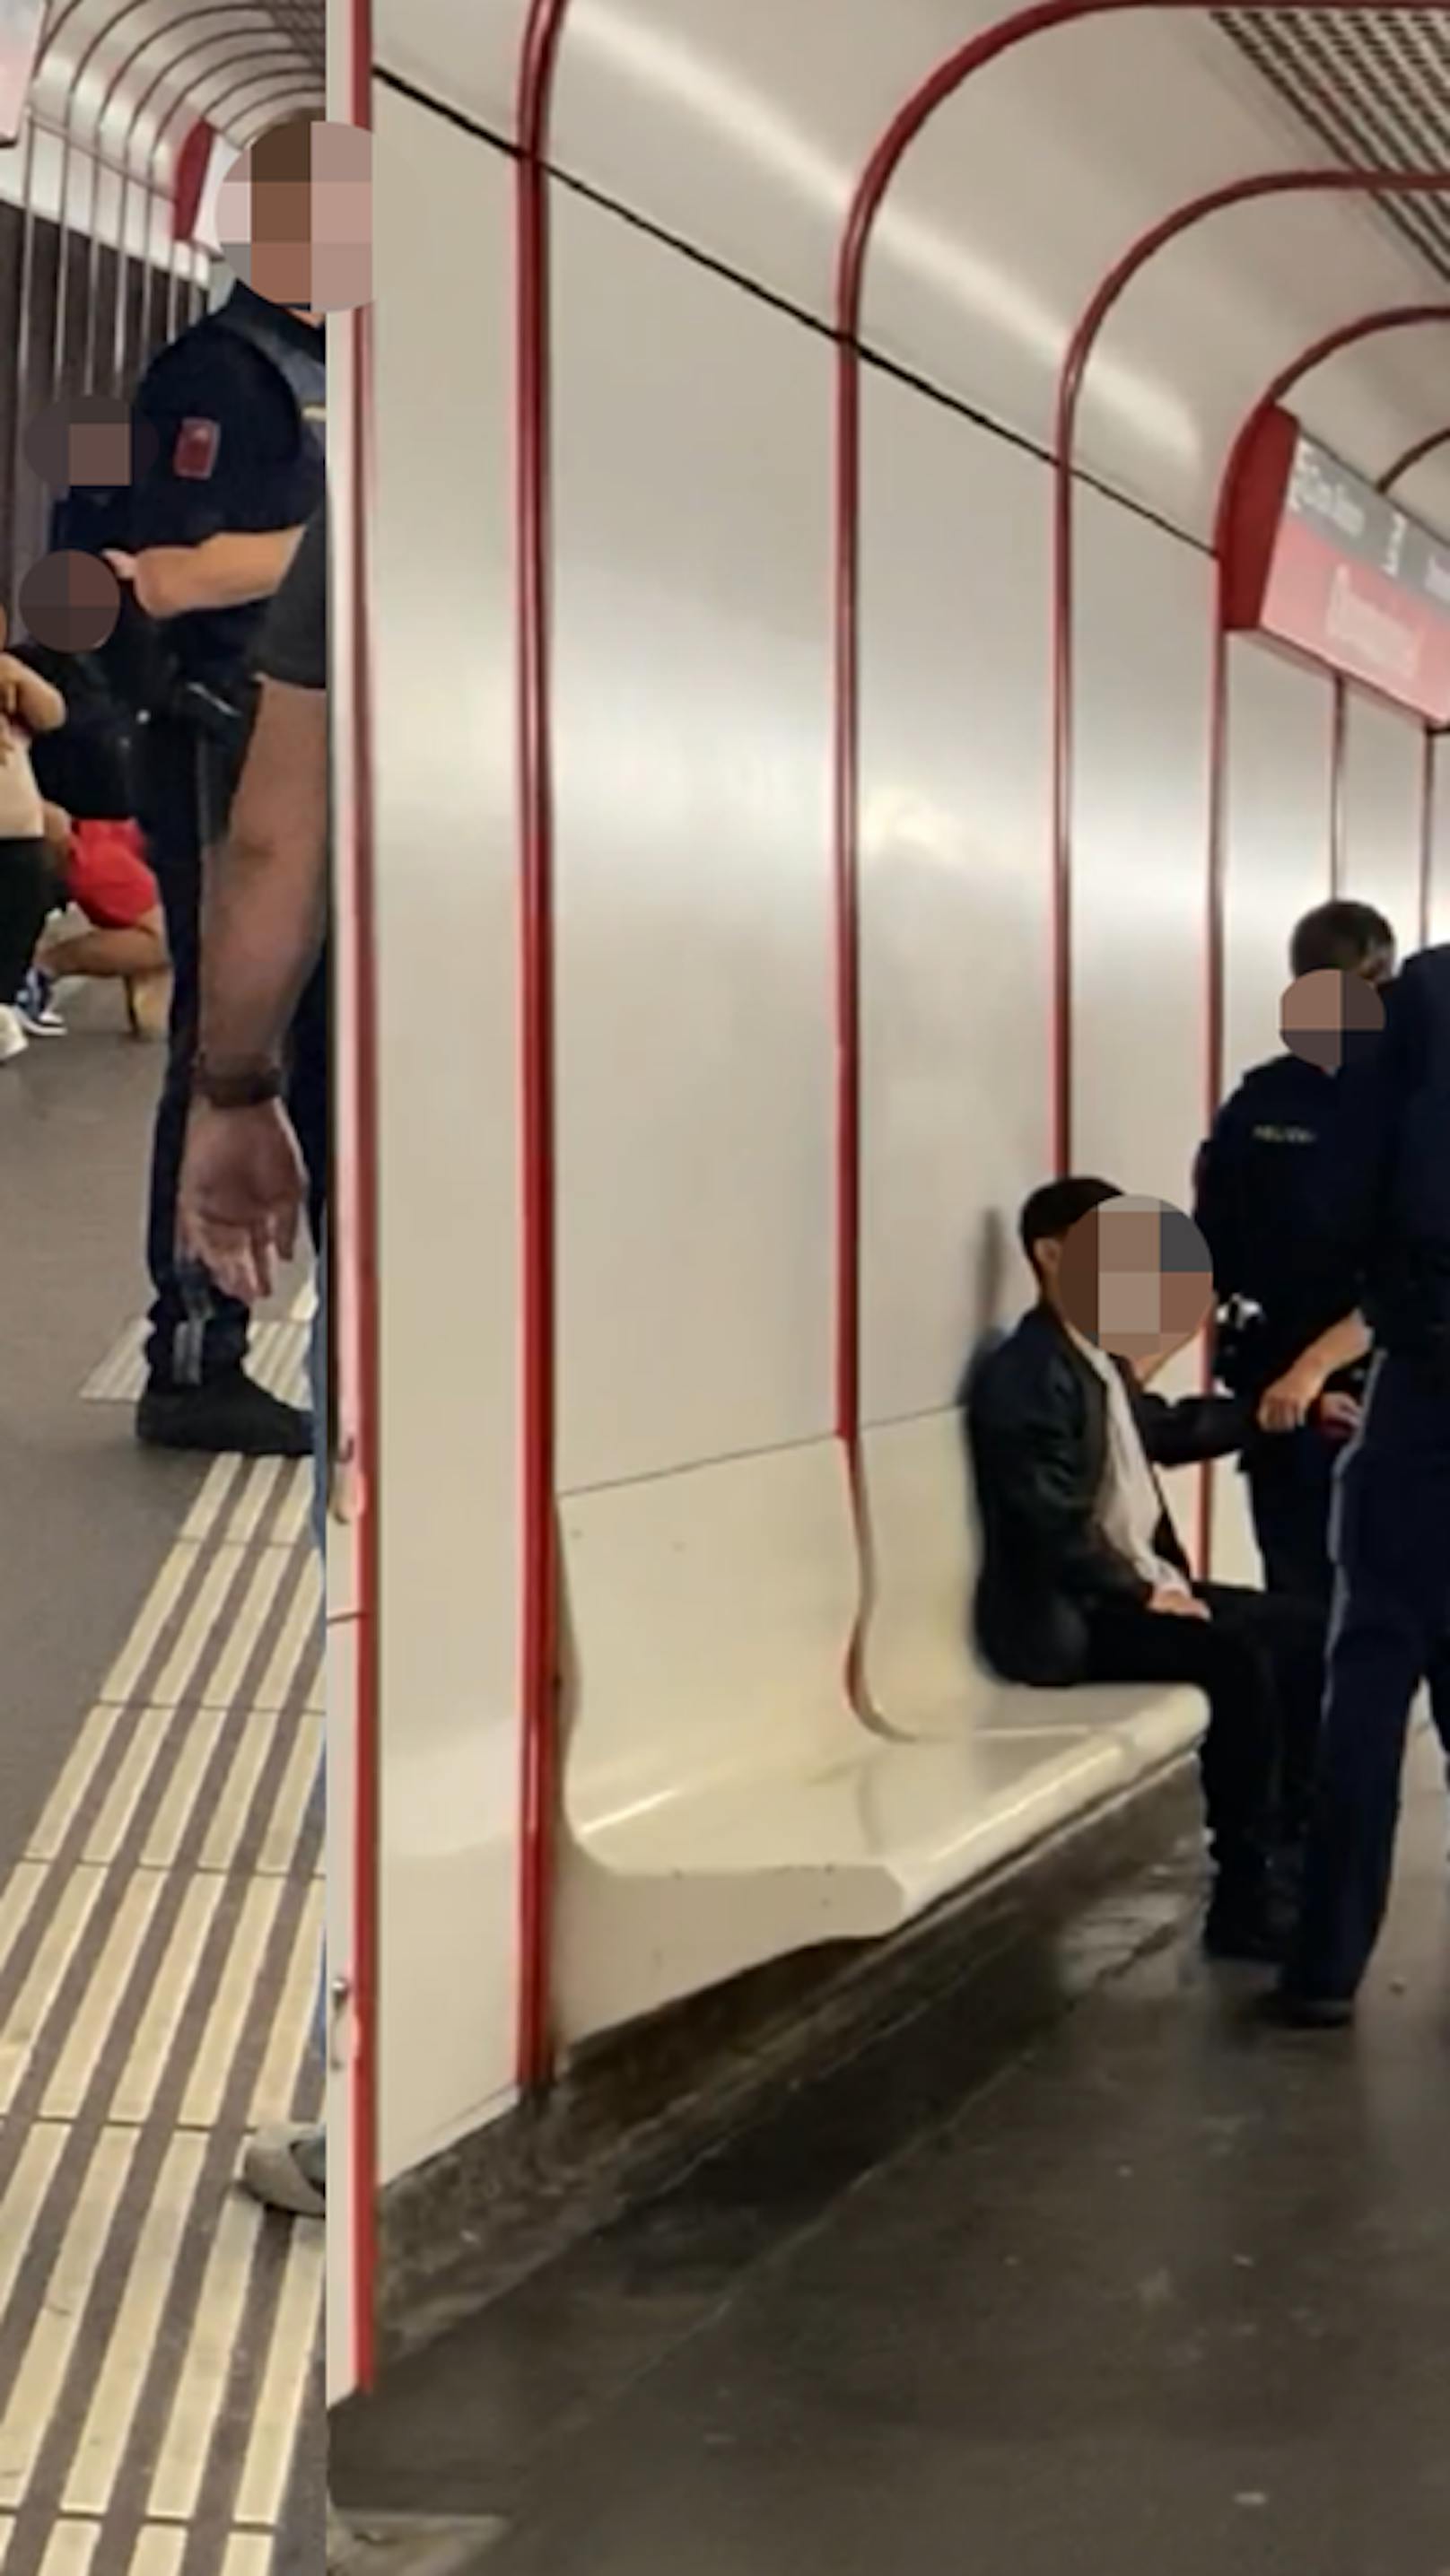 Betrunkener schlägt in Wiener U-Bahn auf Fahrgast ein